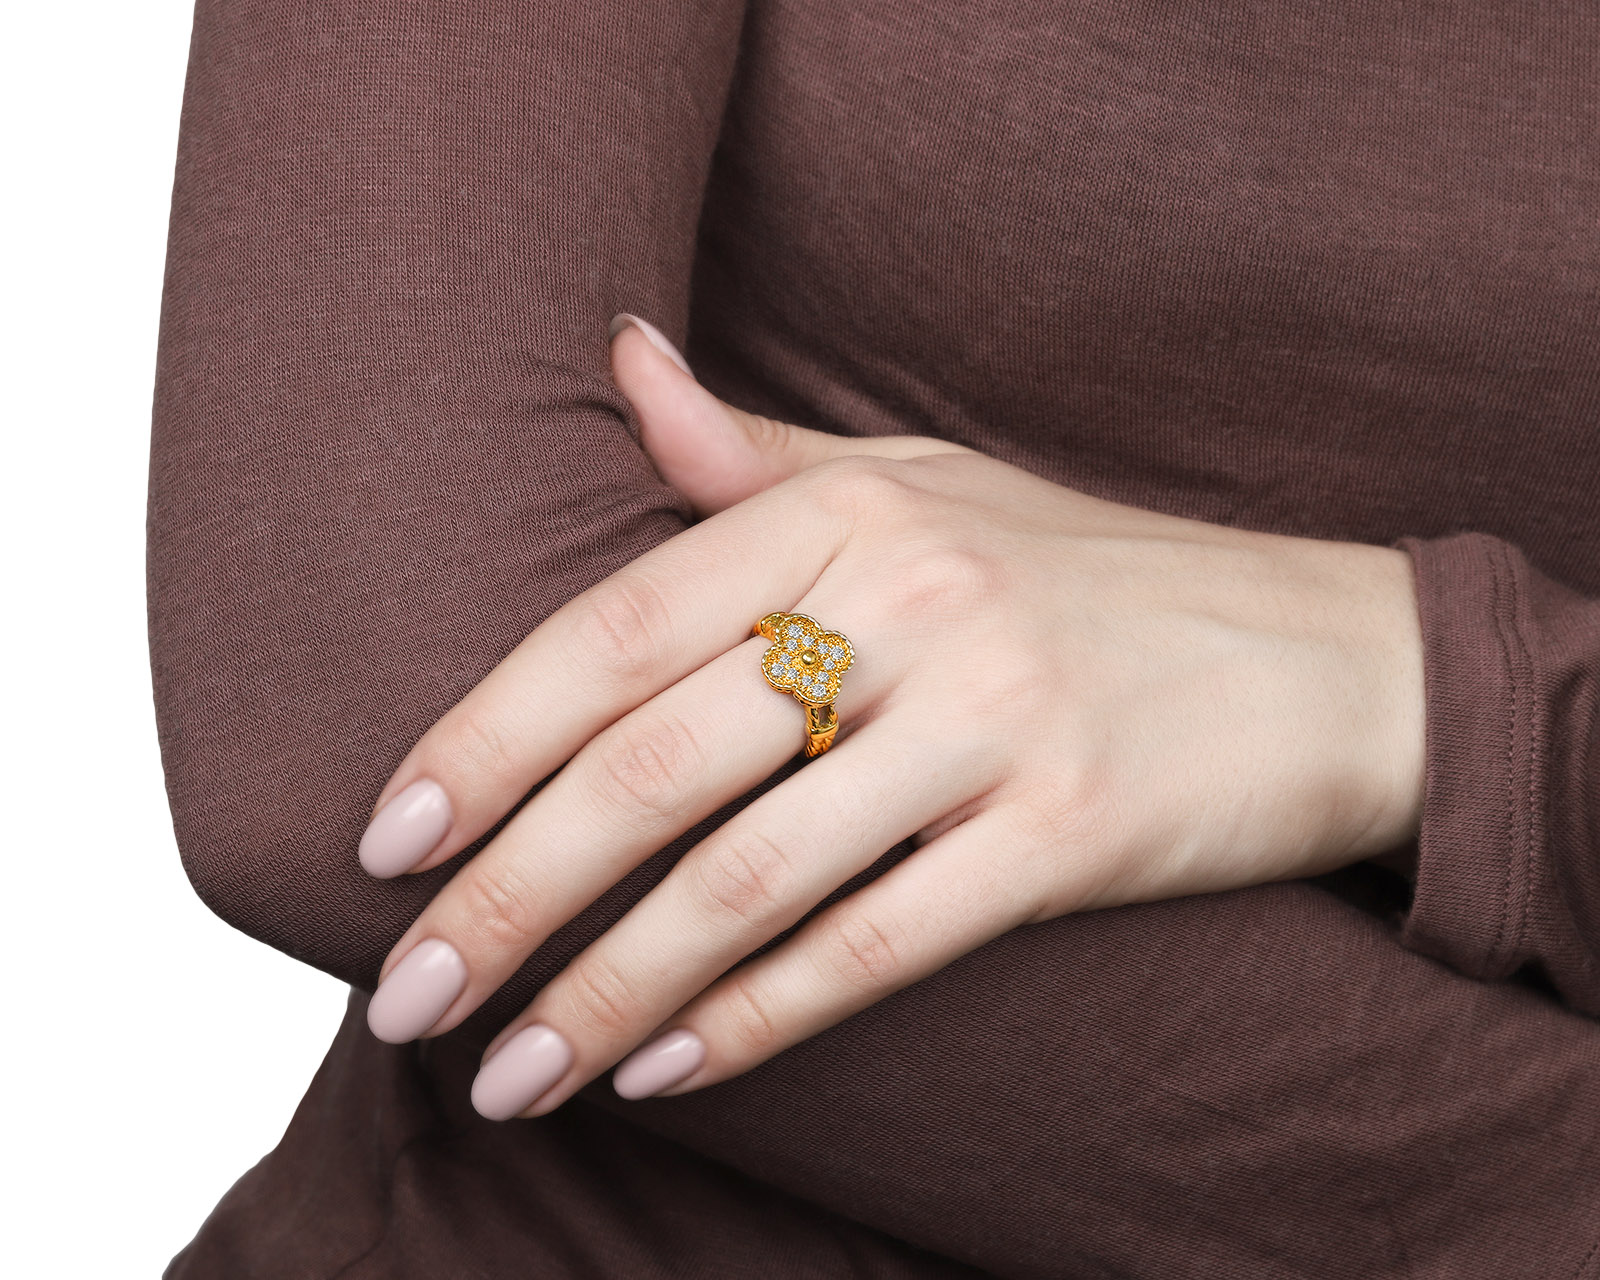 Оригинальное золотое кольцо с бриллиантами 0.32ct Van Cleef & Arpels Vintage Alhambra